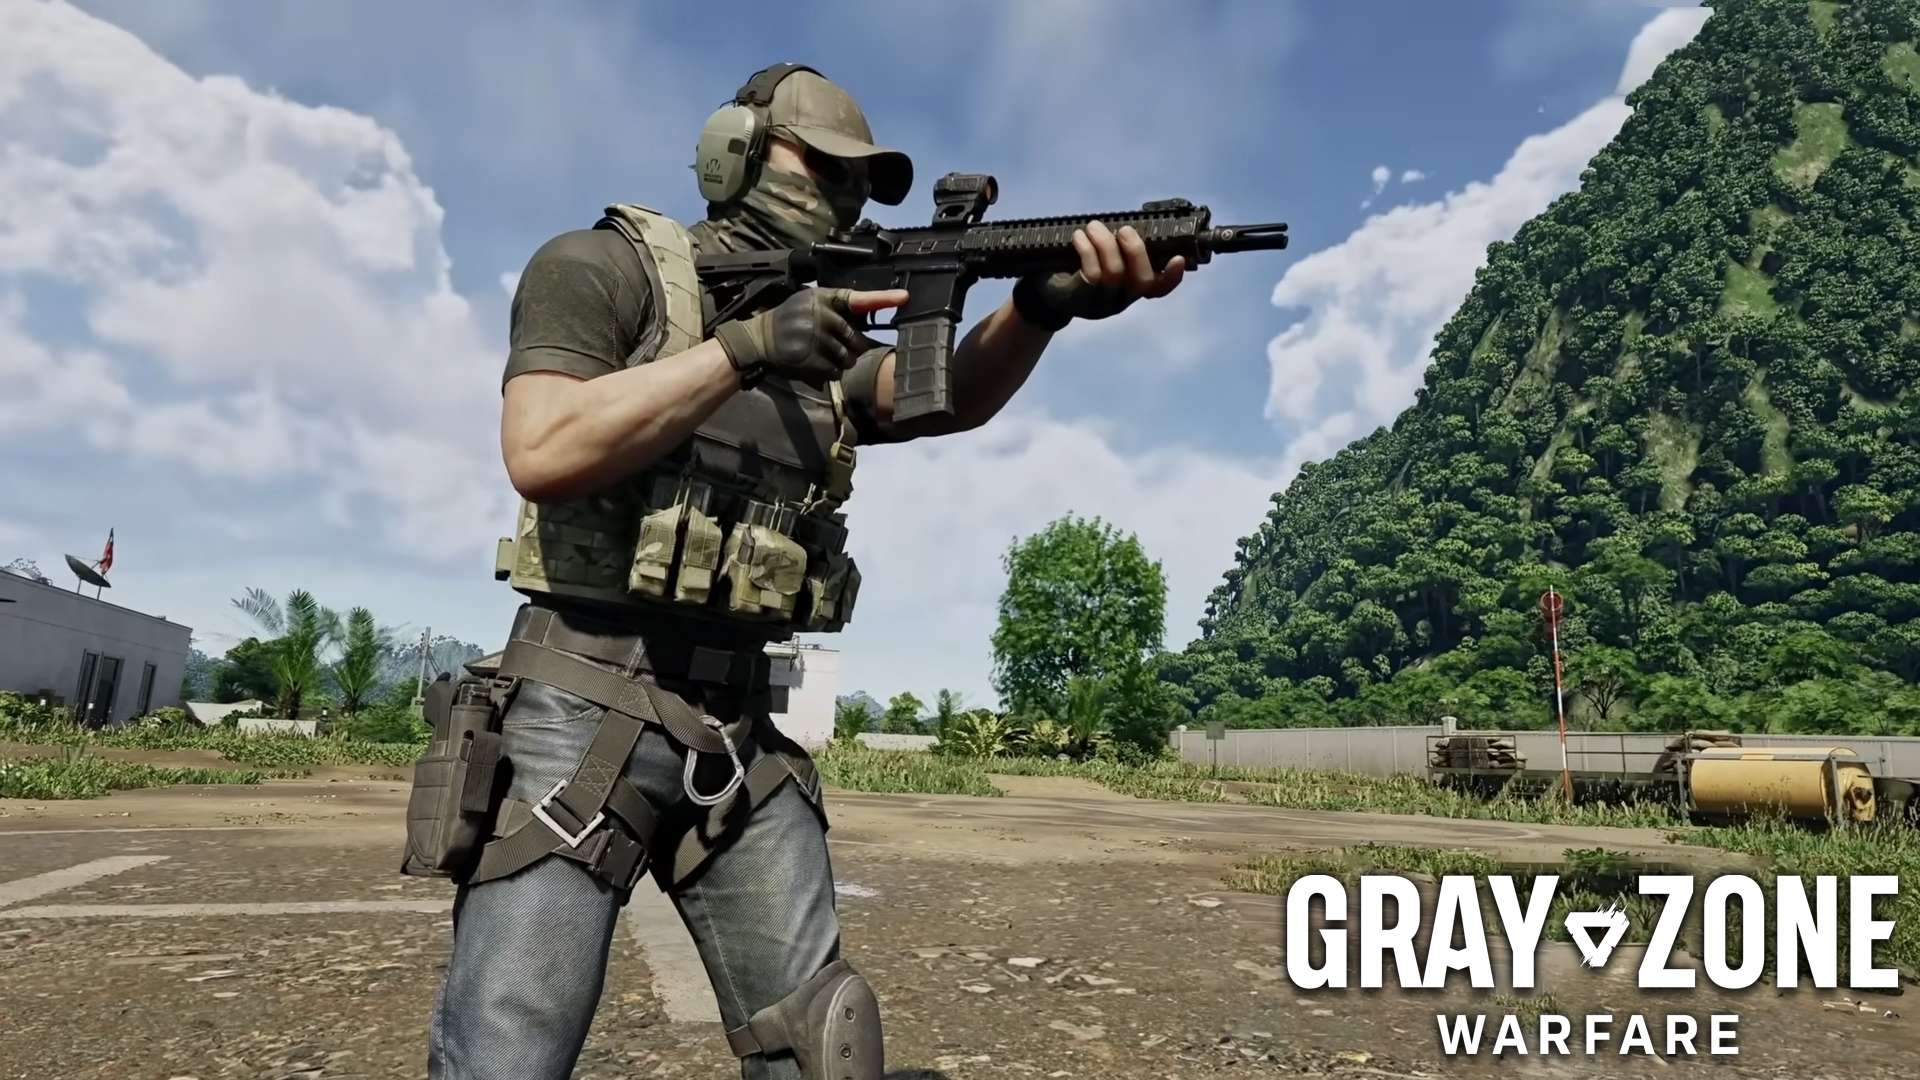 Joueur debout avec une arme dans Gray Zone Warfare